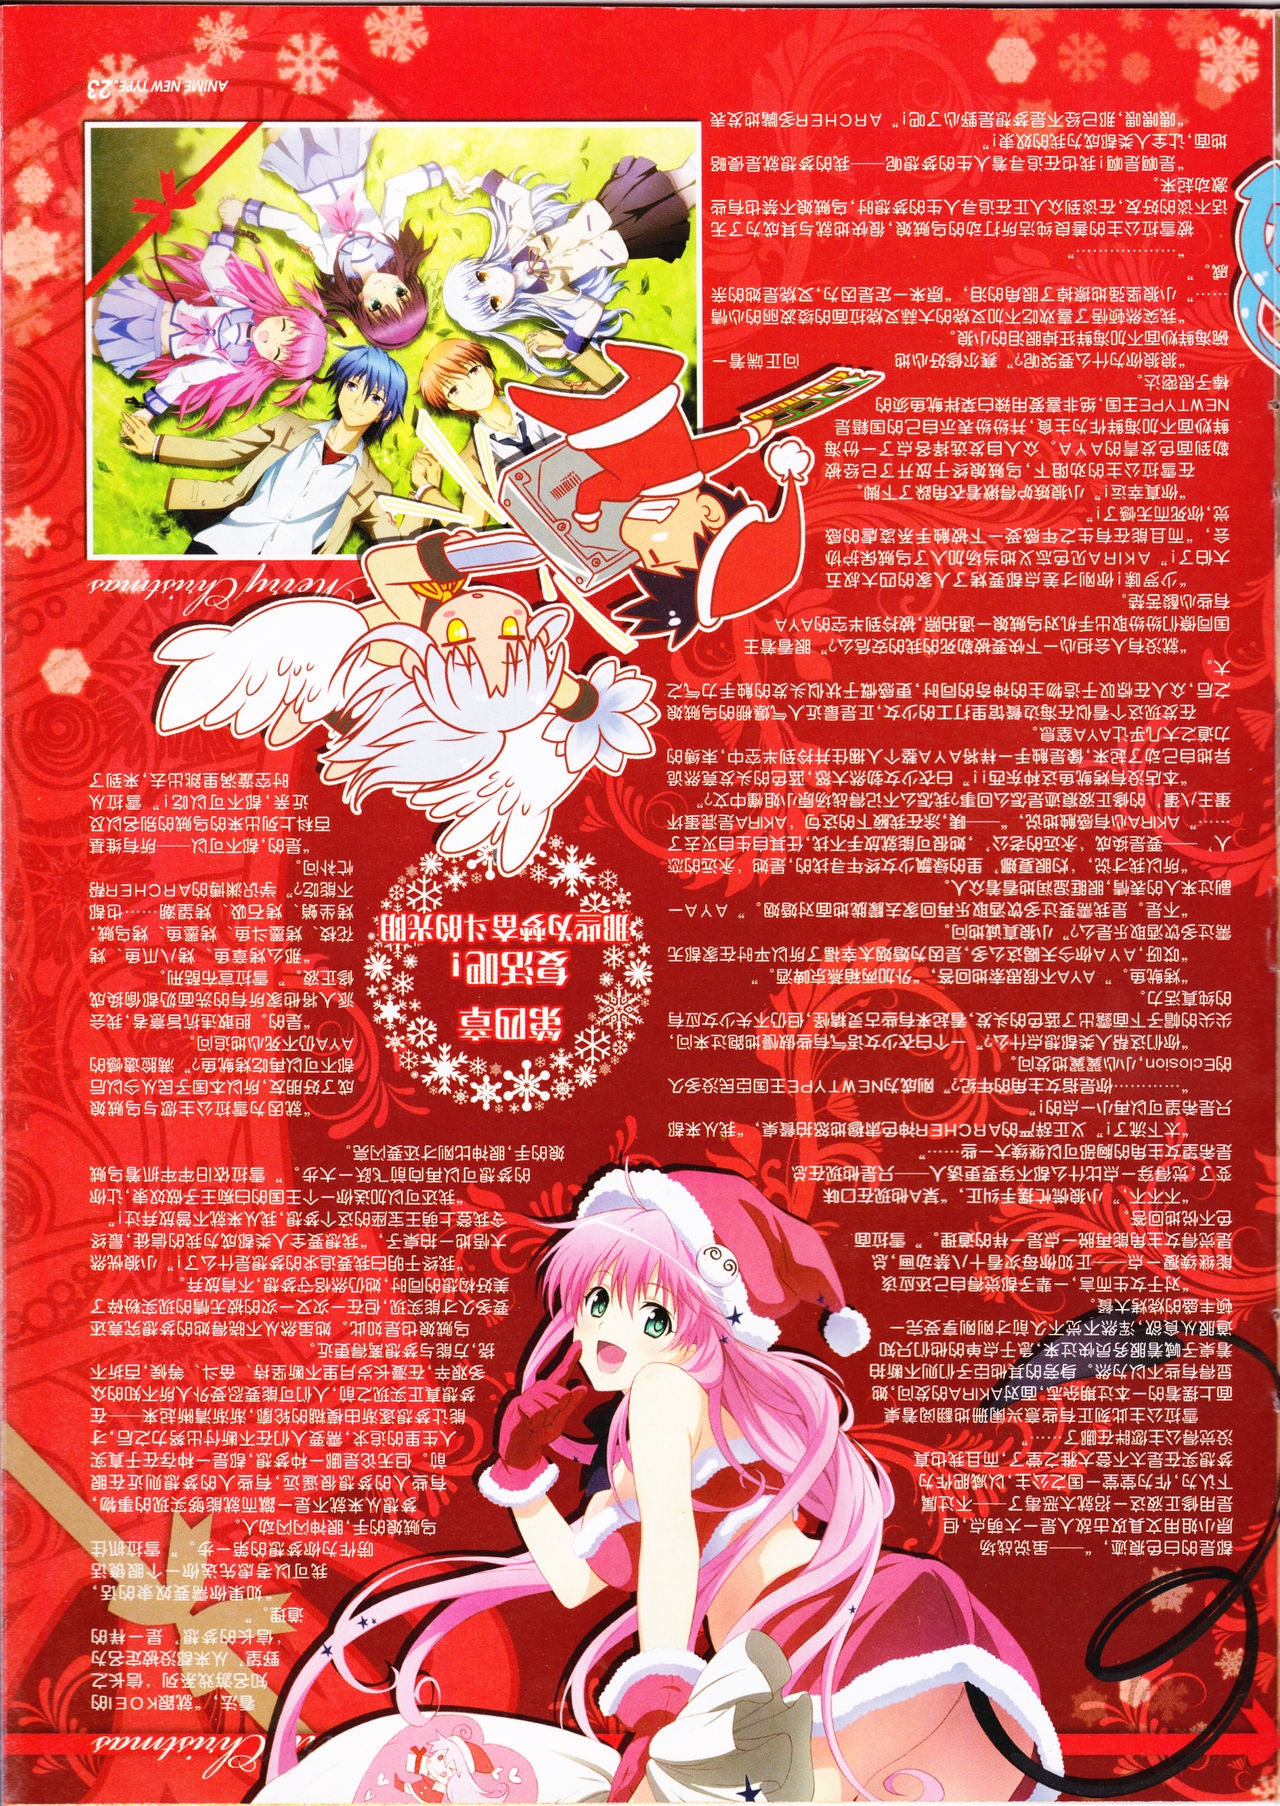 Anime New Type Vol.095 24